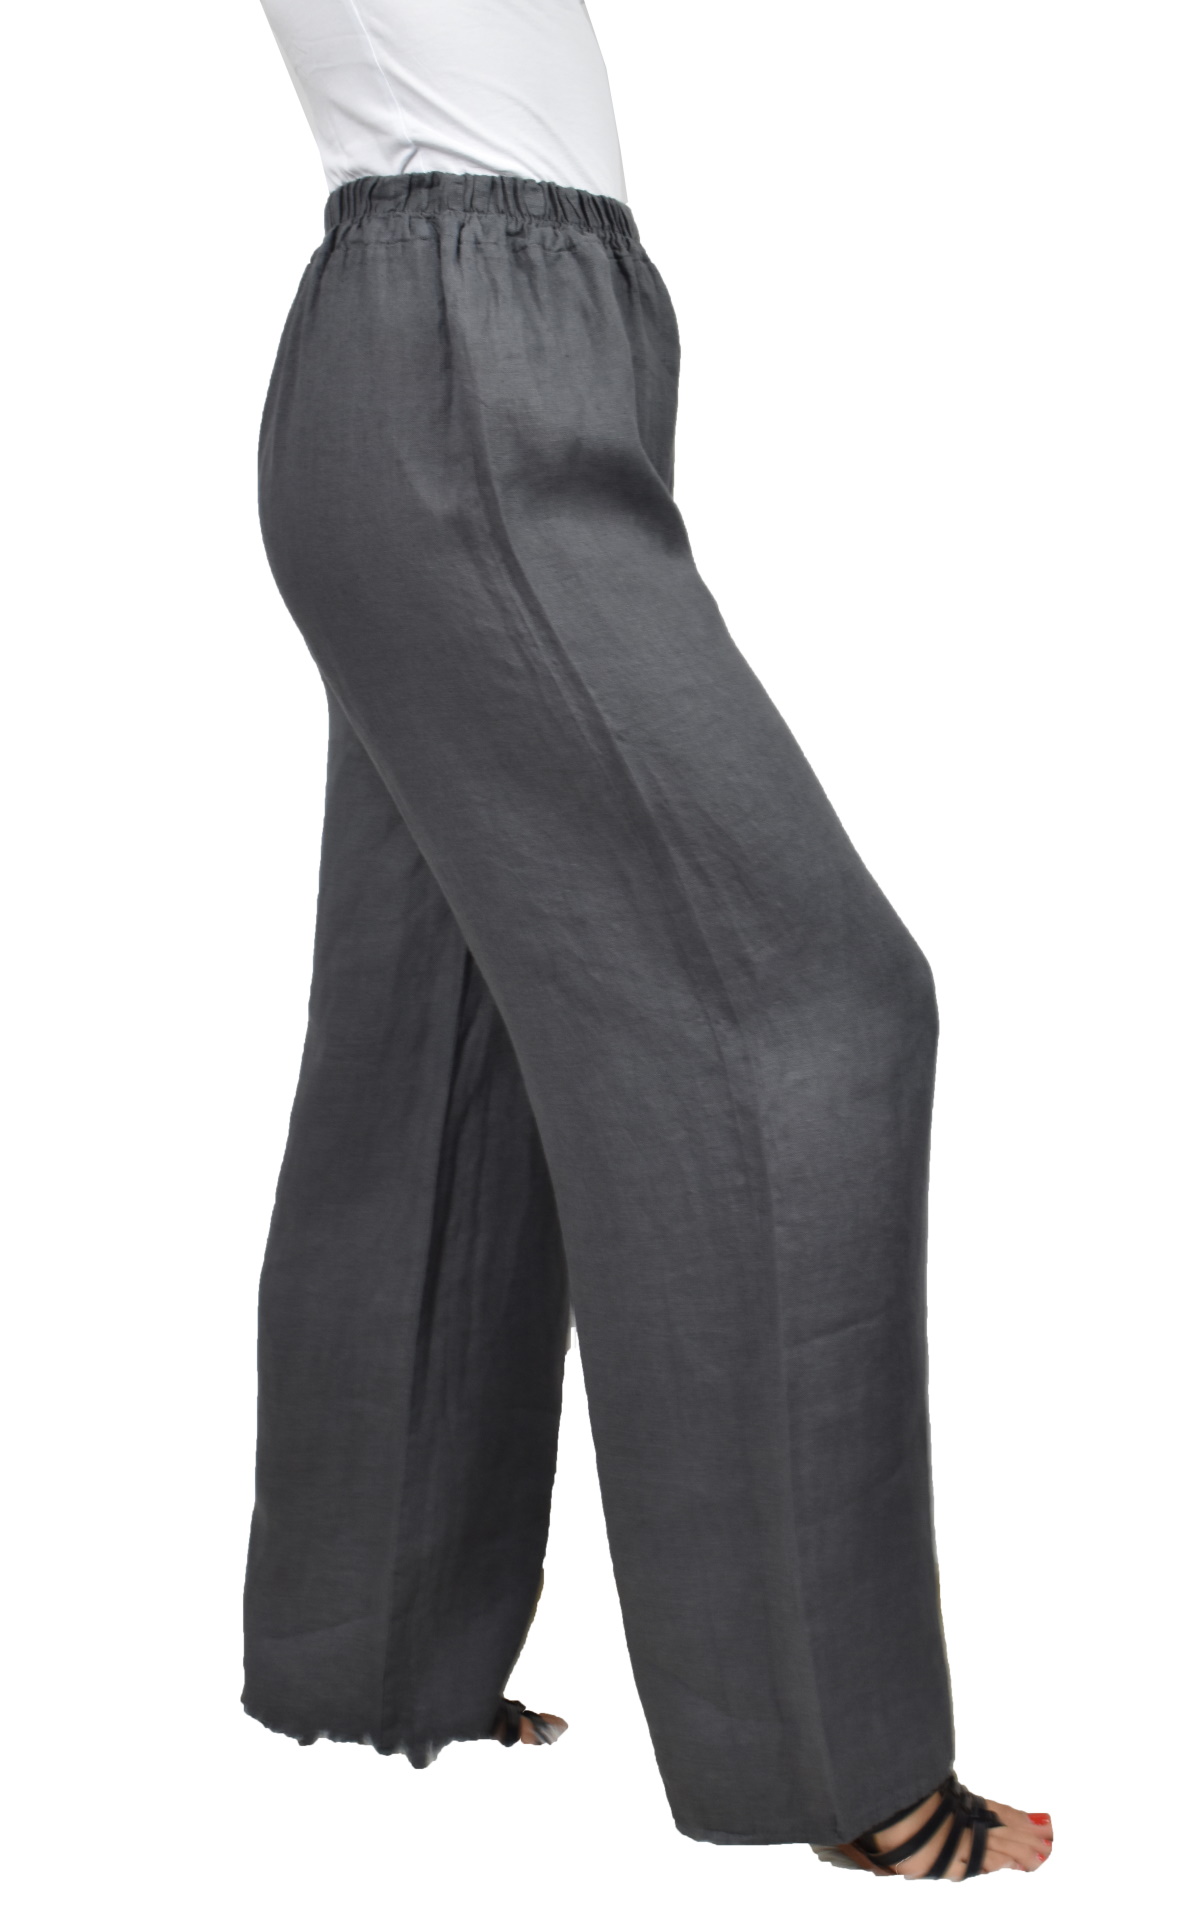 PANMAXPE2102 GRIGIO PANTALONE DA DONNA A GAMBA LARGA 100 LINO 3 1stAmerican pantalone da donna a gamba larga 100% lino Made in Italy - pantalone mare donna